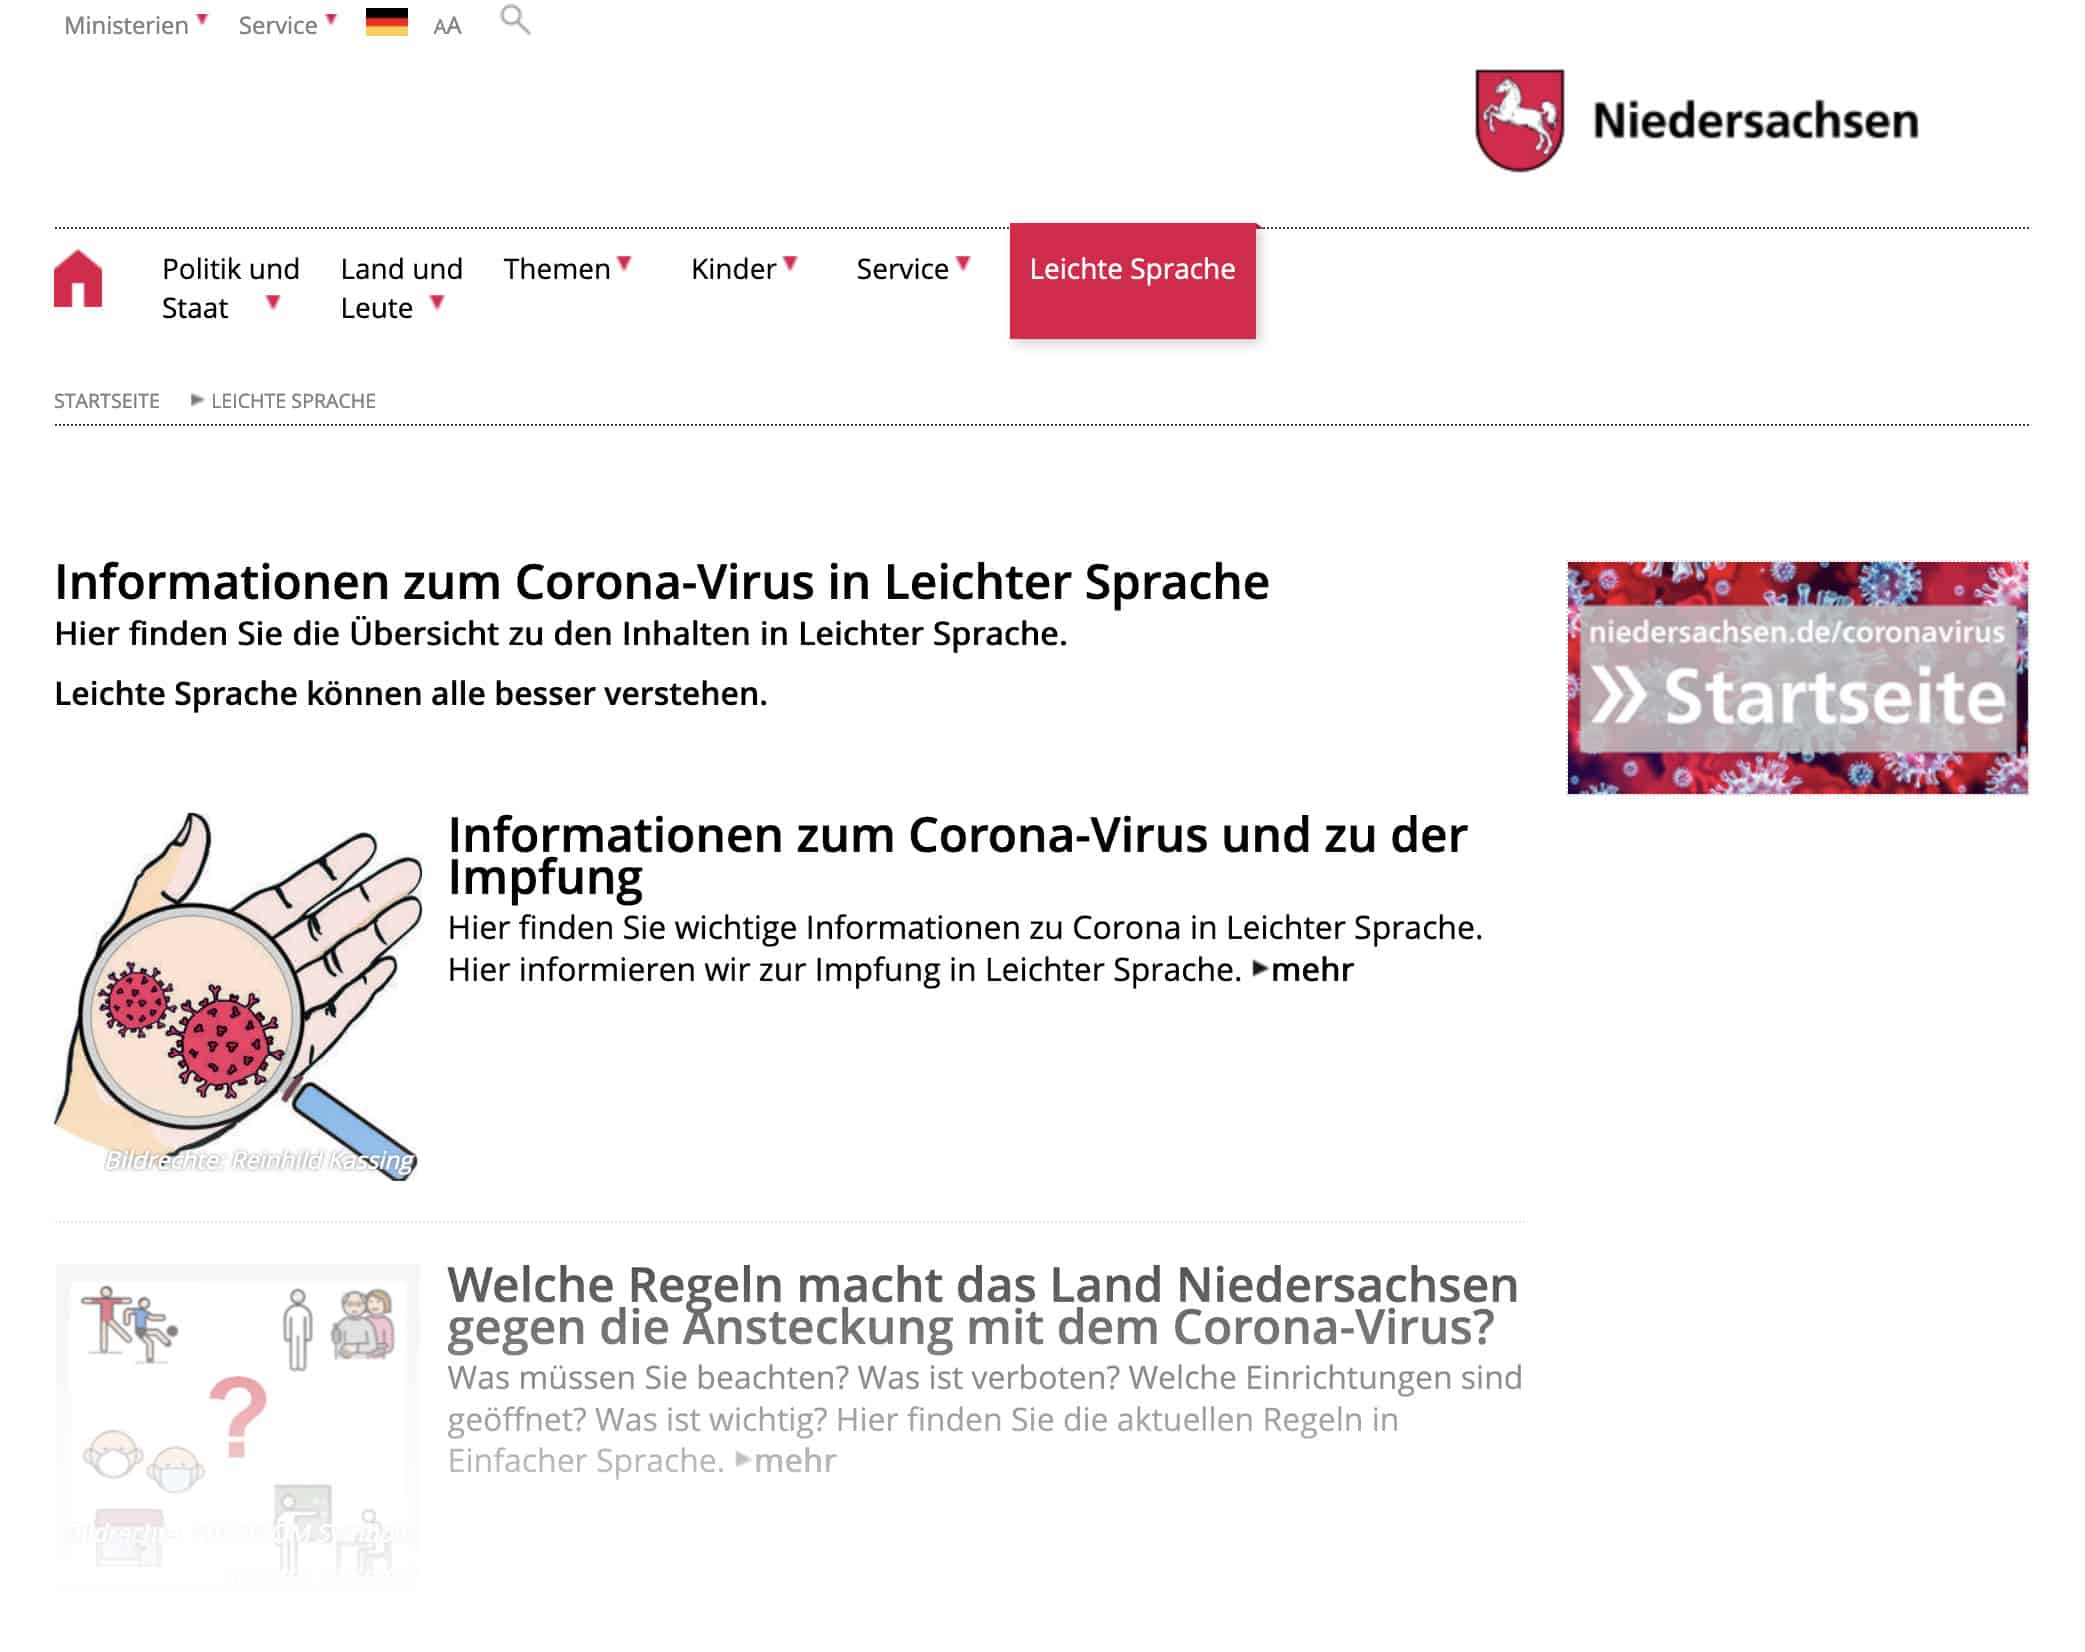 Informationen zum Corona-Virus in leichter Sprache